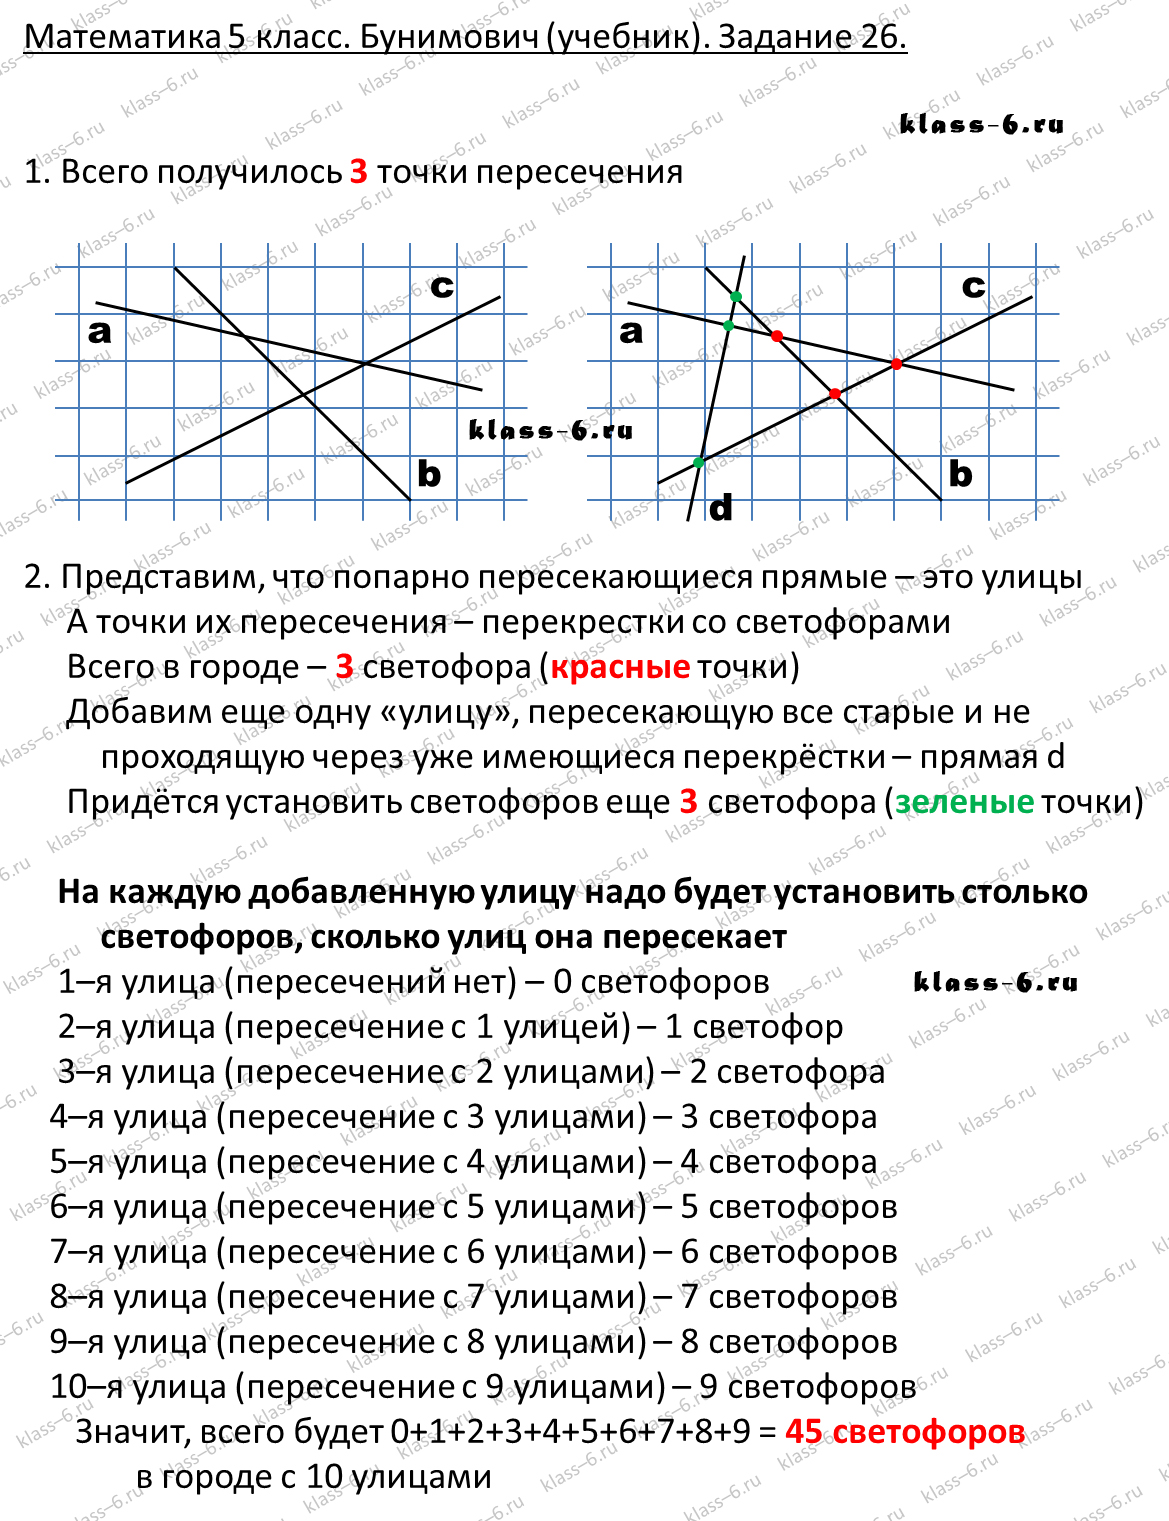 решебник и гдз по математике учебник Бунимович 5 класс задание 26